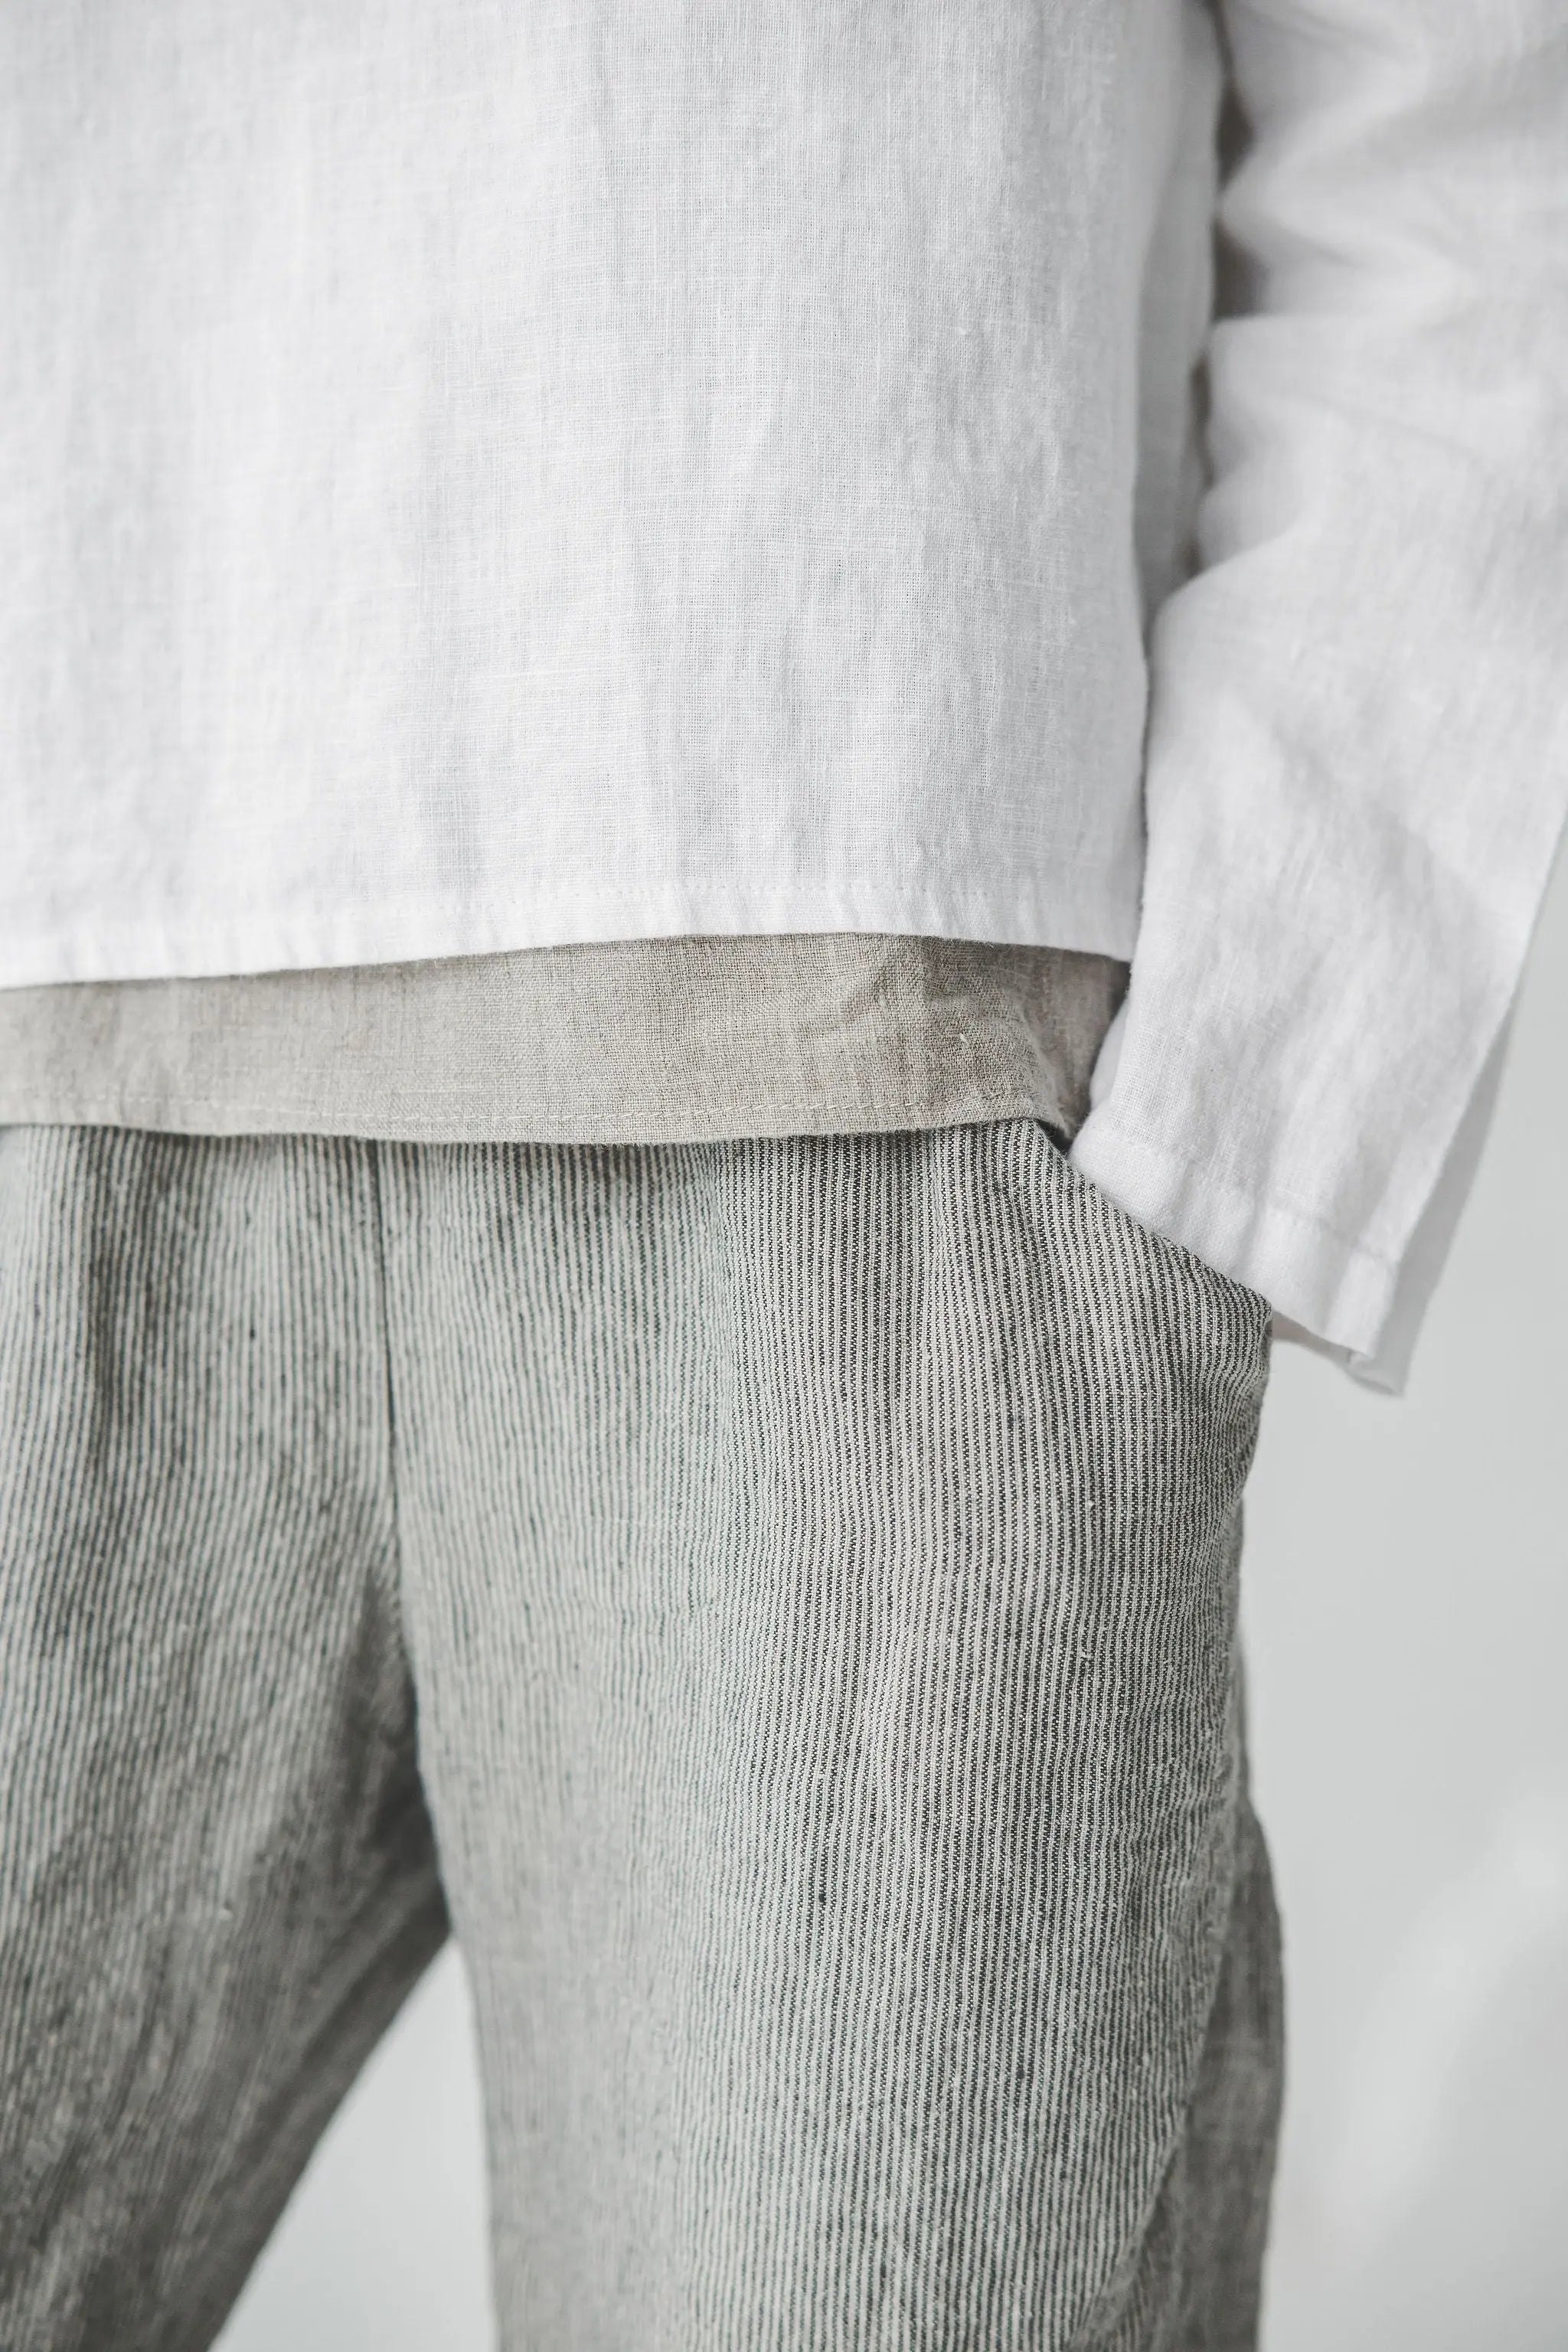 READY TO SHIP Casual Linen Blouse - Epic Linen conscious fashion